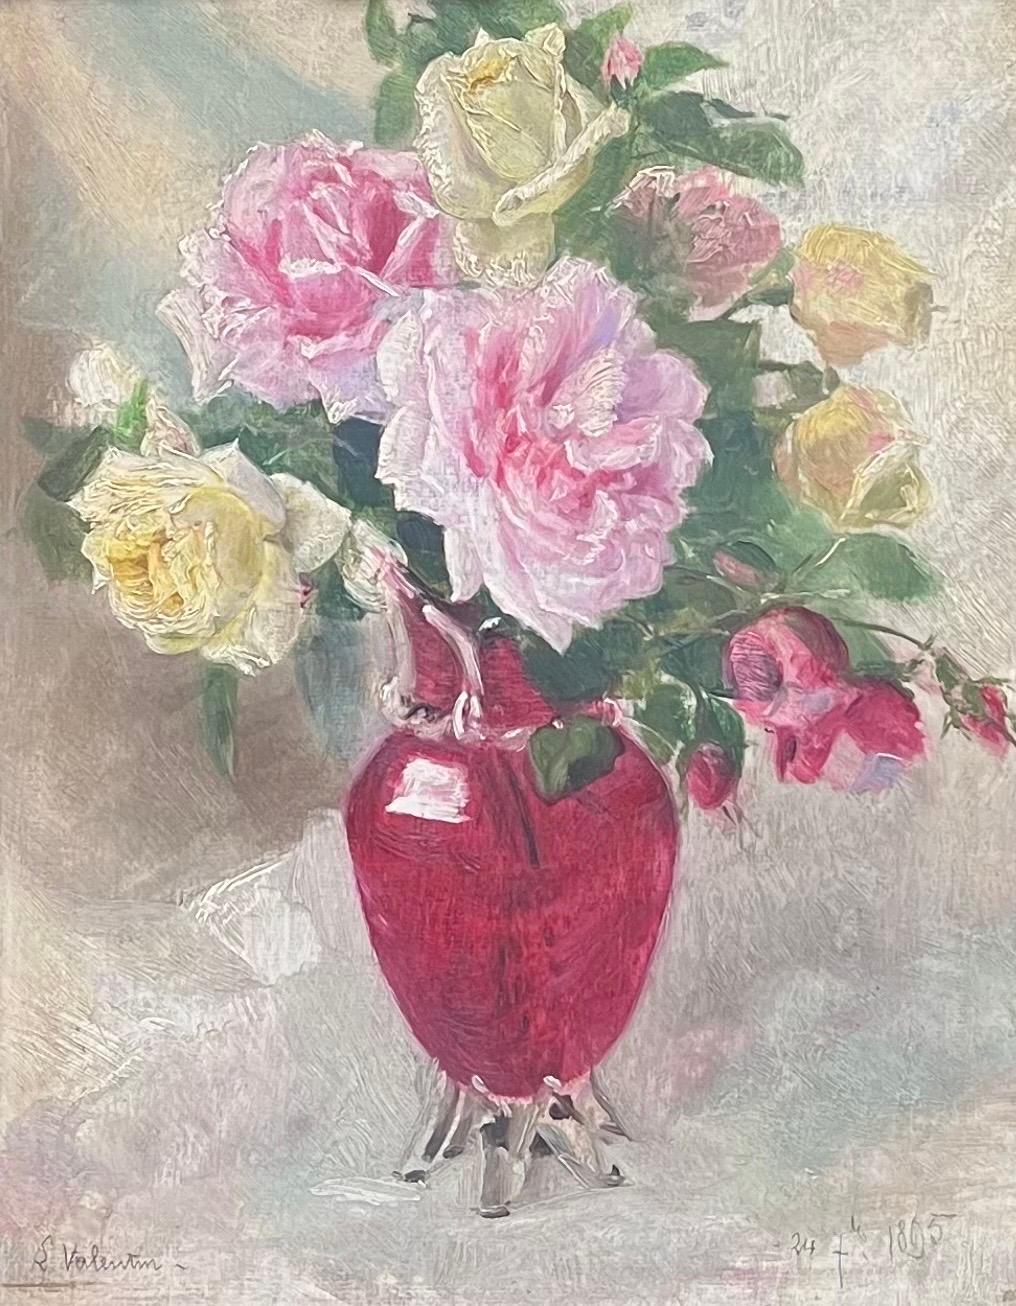 Französisch 19. Jahrhundert Impressionist Öl Rosen in roten Vase in antiken vergoldeten Rahmen – Painting von French Late 19th Century School